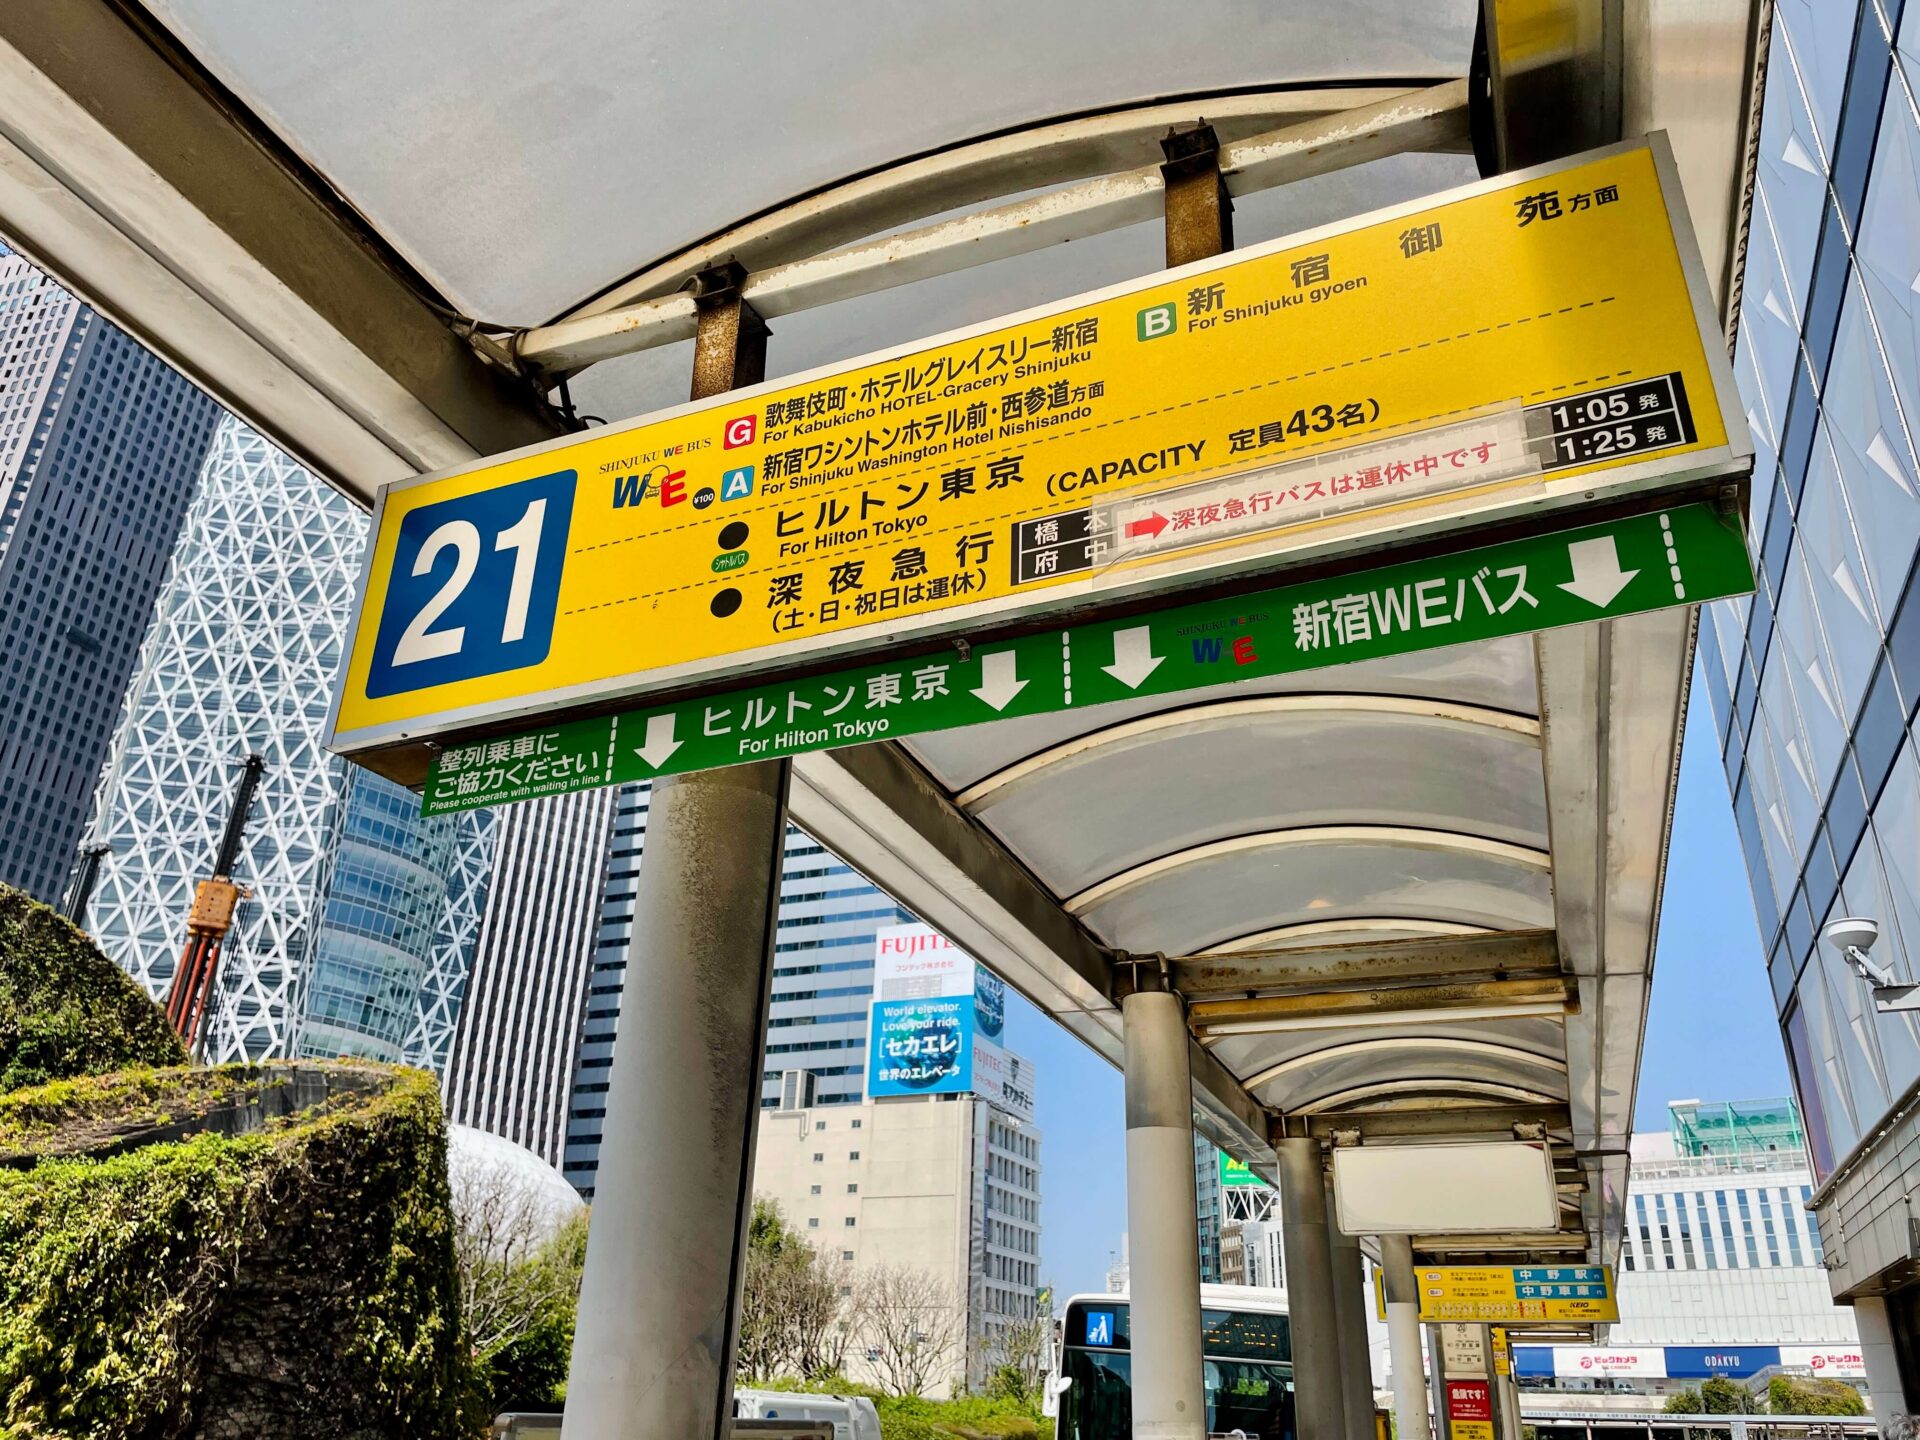 徒歩で「山手線一周」新宿駅 ヒルトン東京へのシャトルバス乗り場